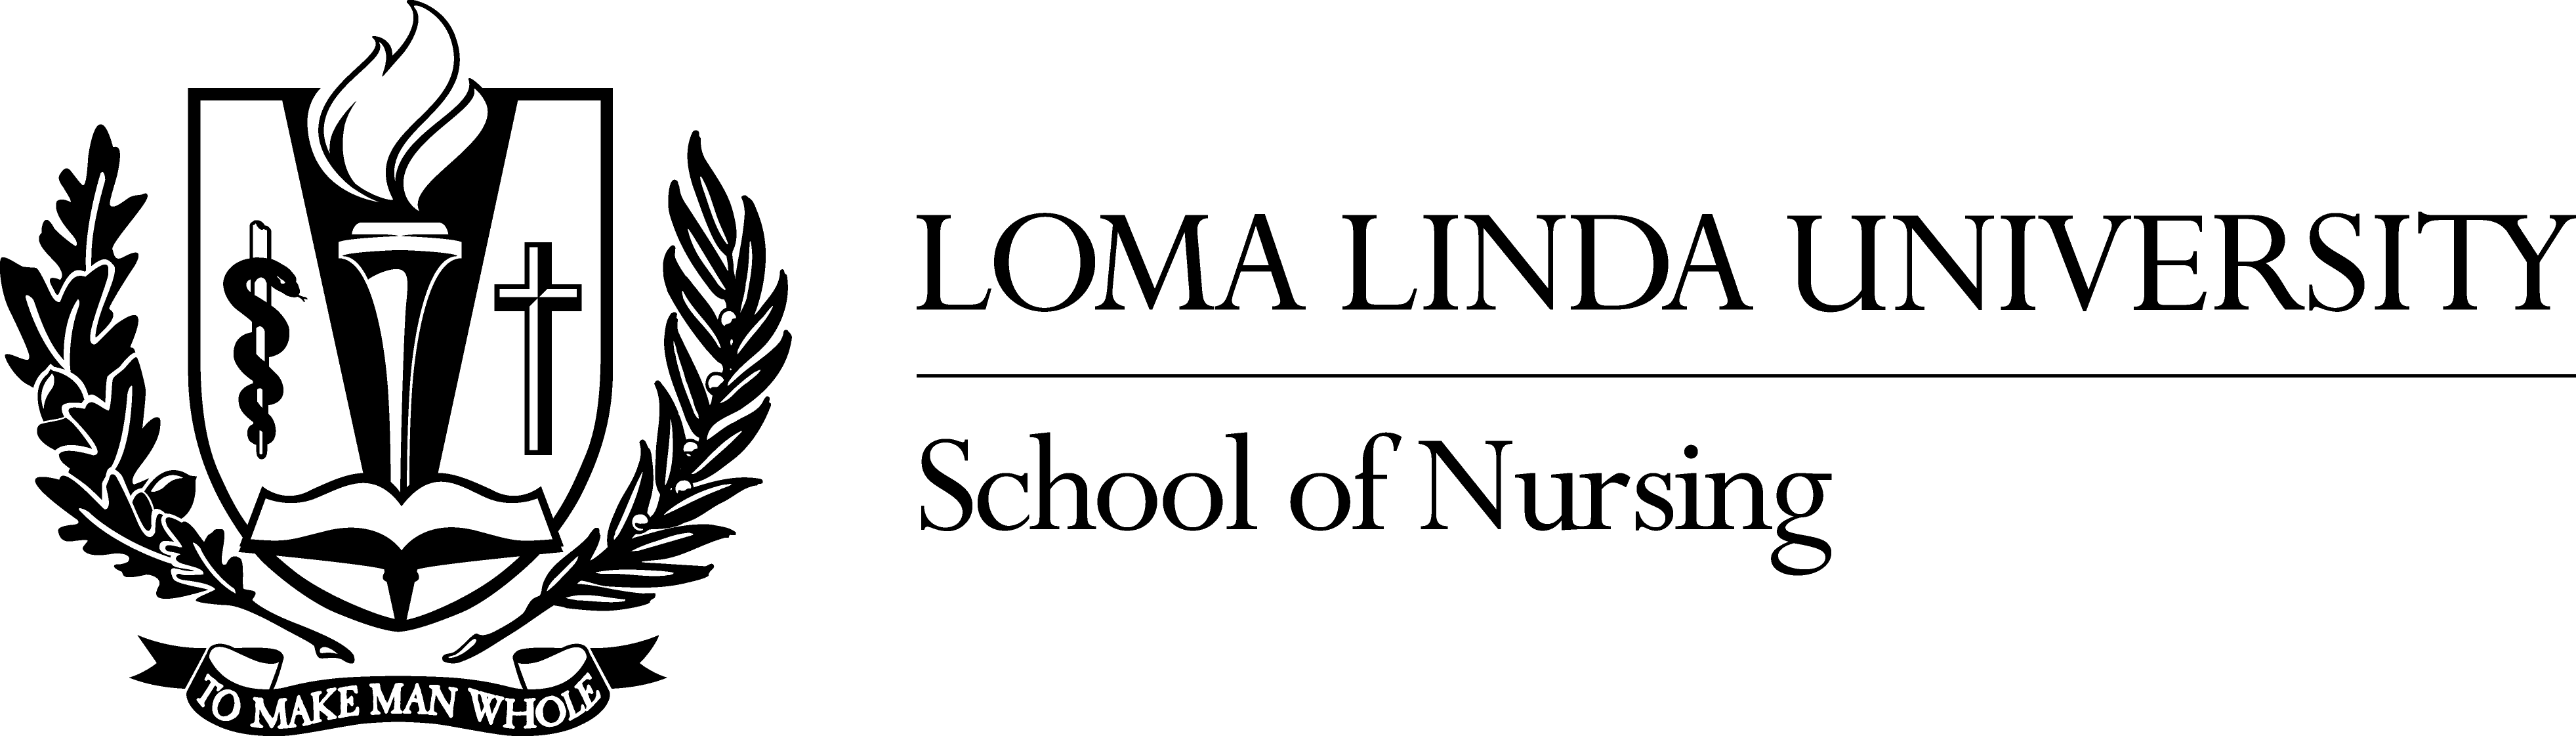 Loma Logo - Logos. School of Nursing. Loma Linda University